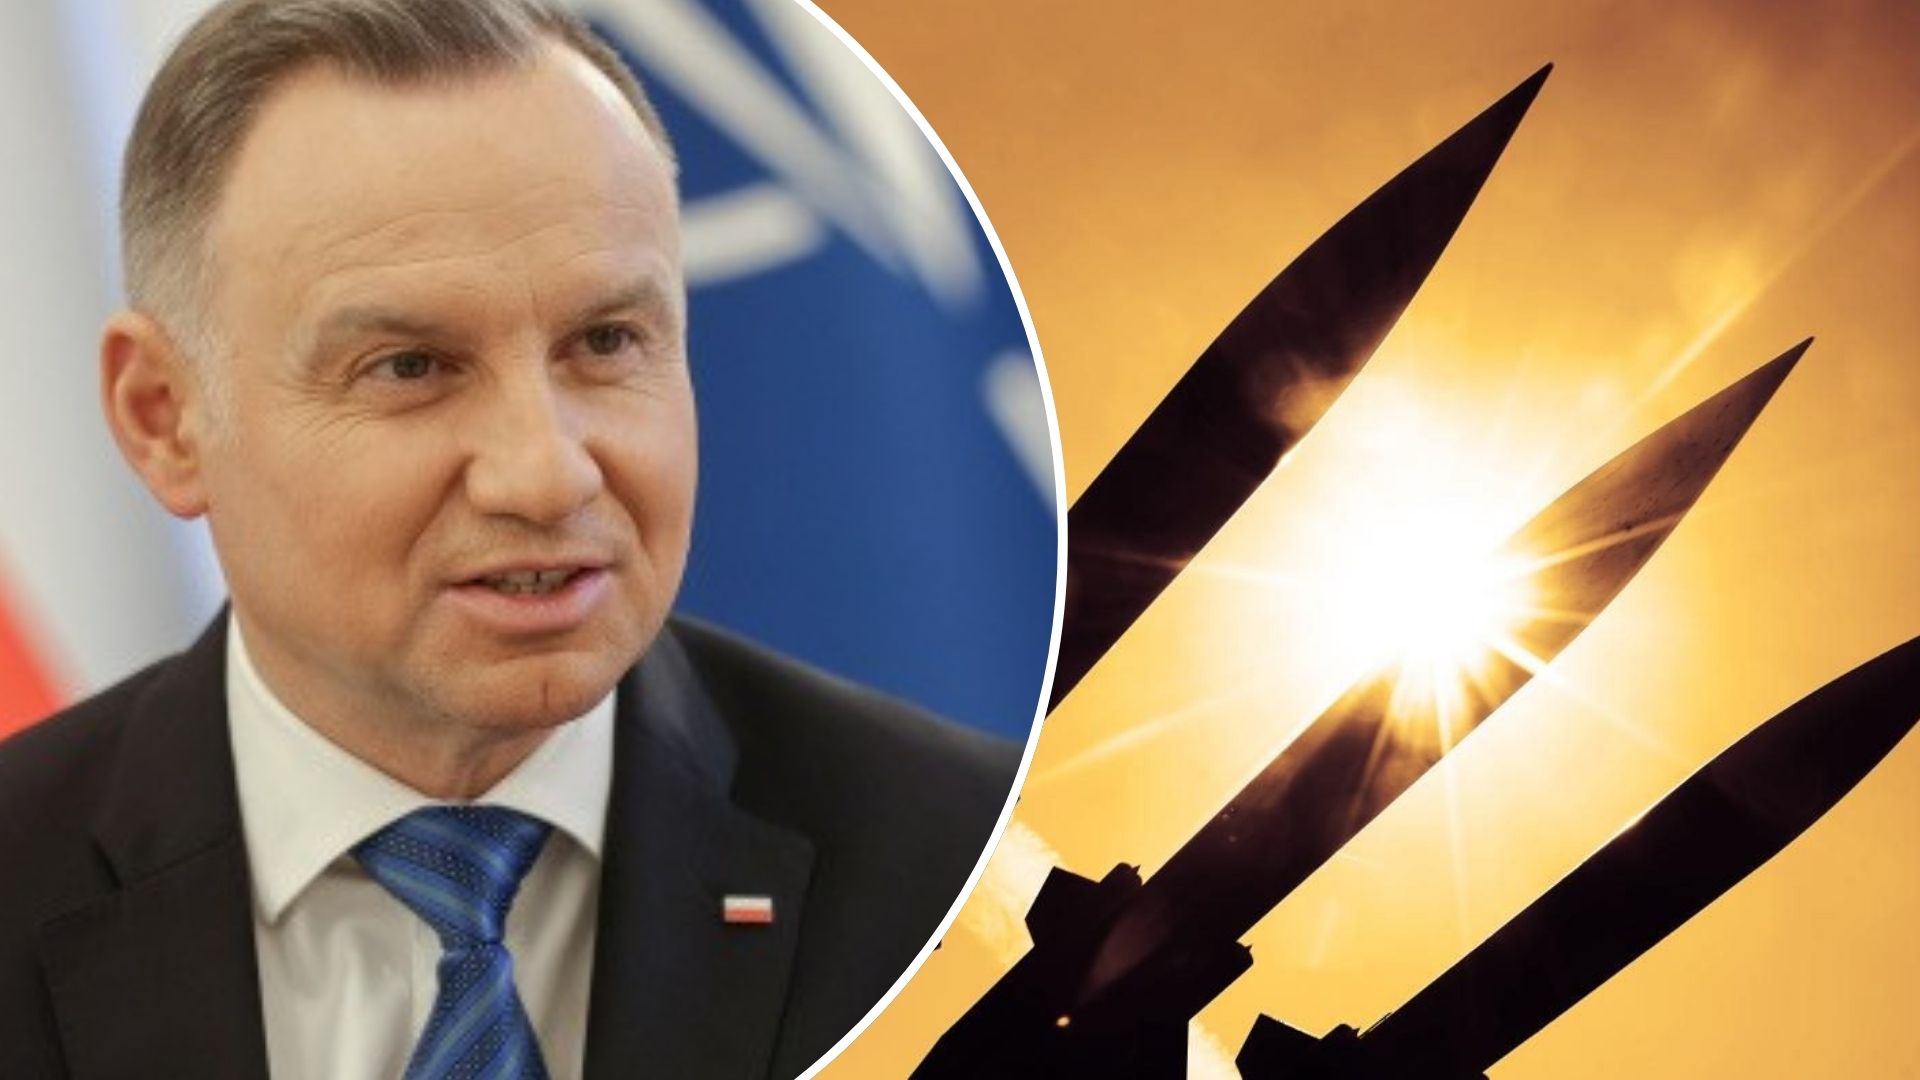 Польша имеет обязательства перед НАТО как член Альянса и готова разместить ядерное оружие на своей территории.